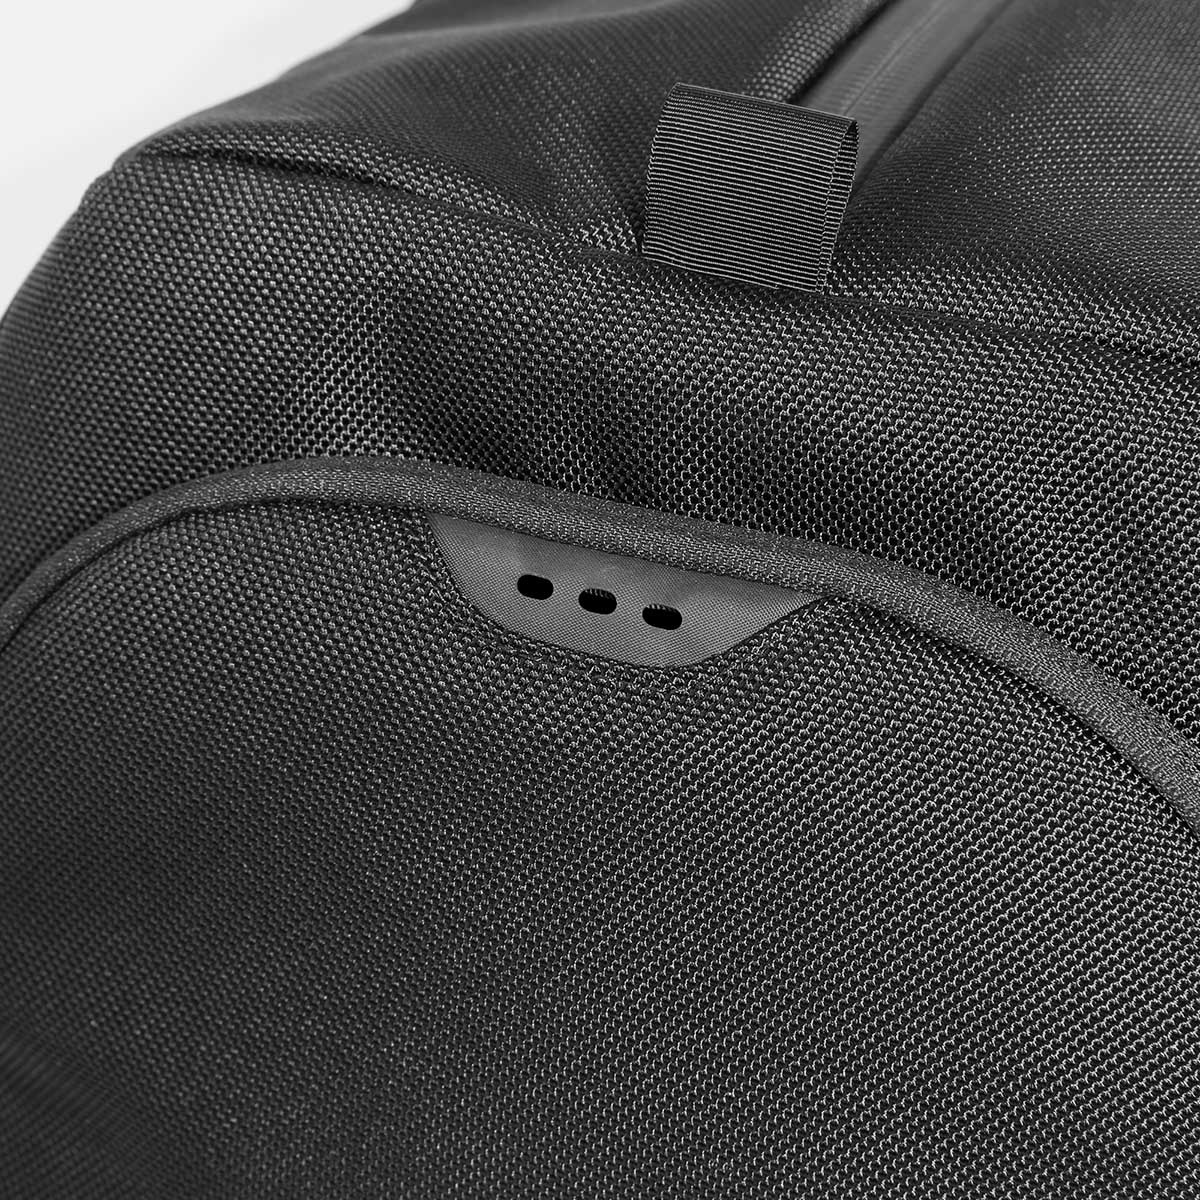 Aer Backpack Fitpack 18.7L Black